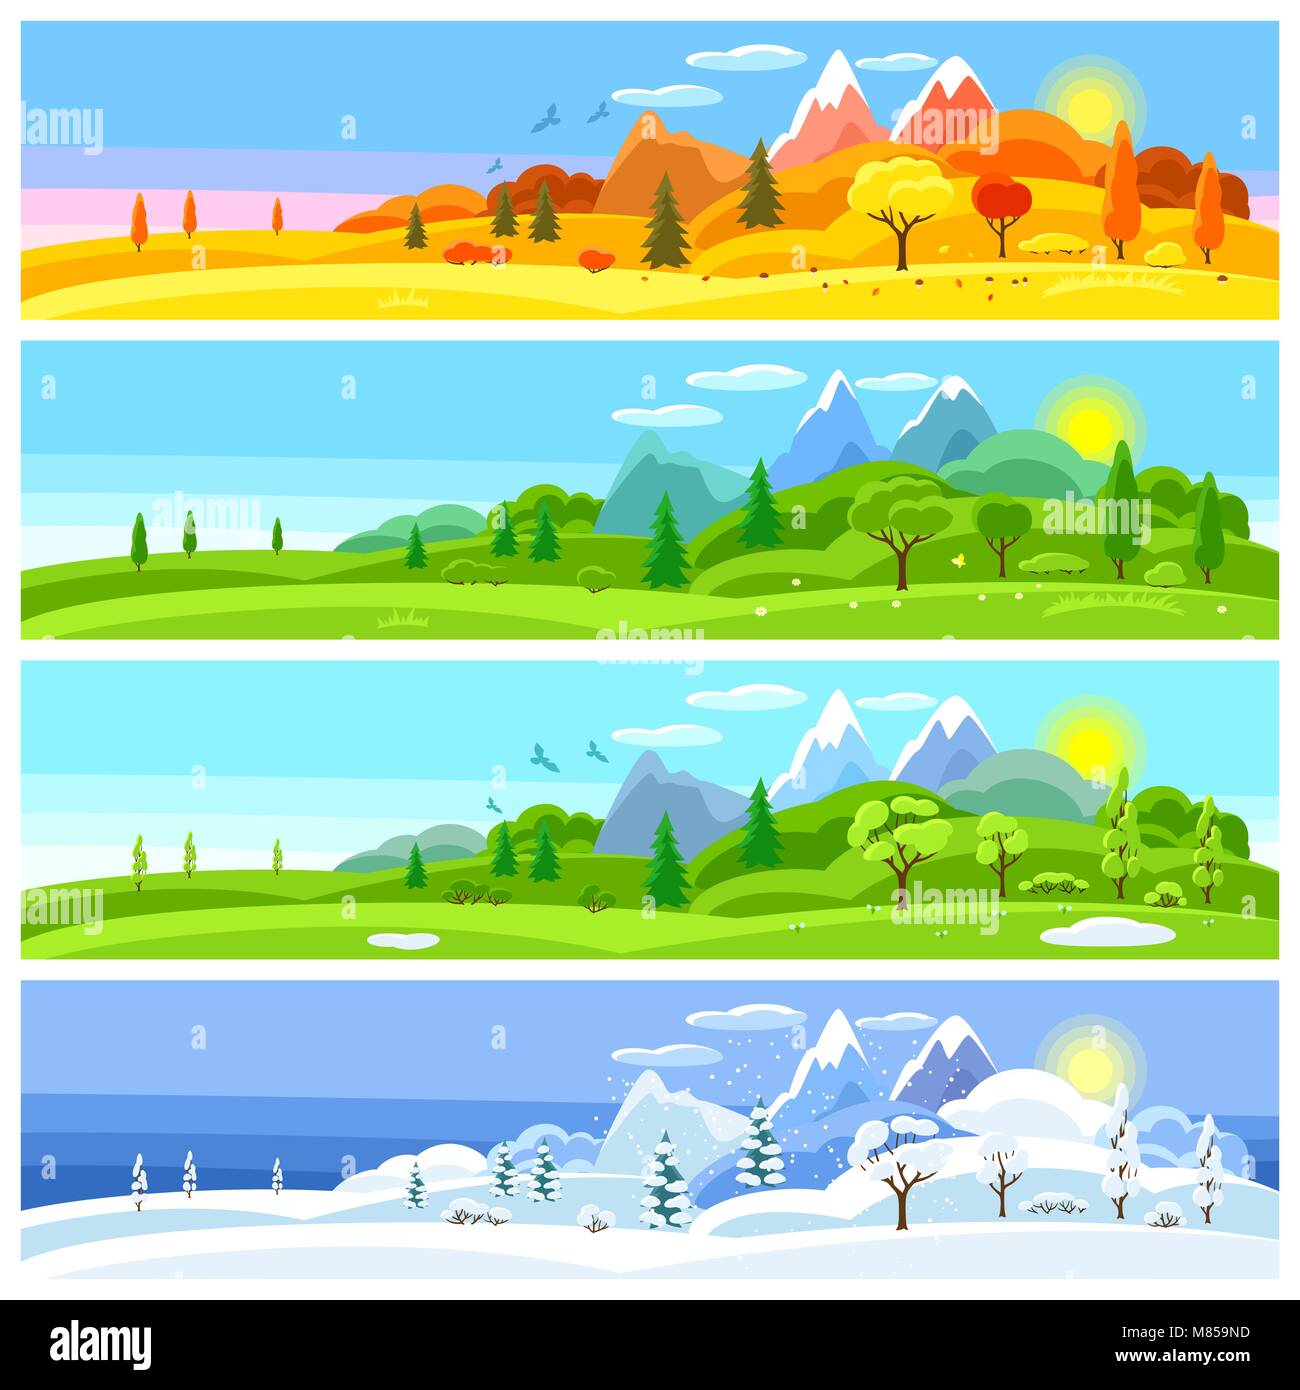 Vier Jahreszeiten Landschaft. Banner mit Bäumen, Bergen und Hügeln im  Winter, Frühling, Sommer, Herbst Stock-Vektorgrafik - Alamy